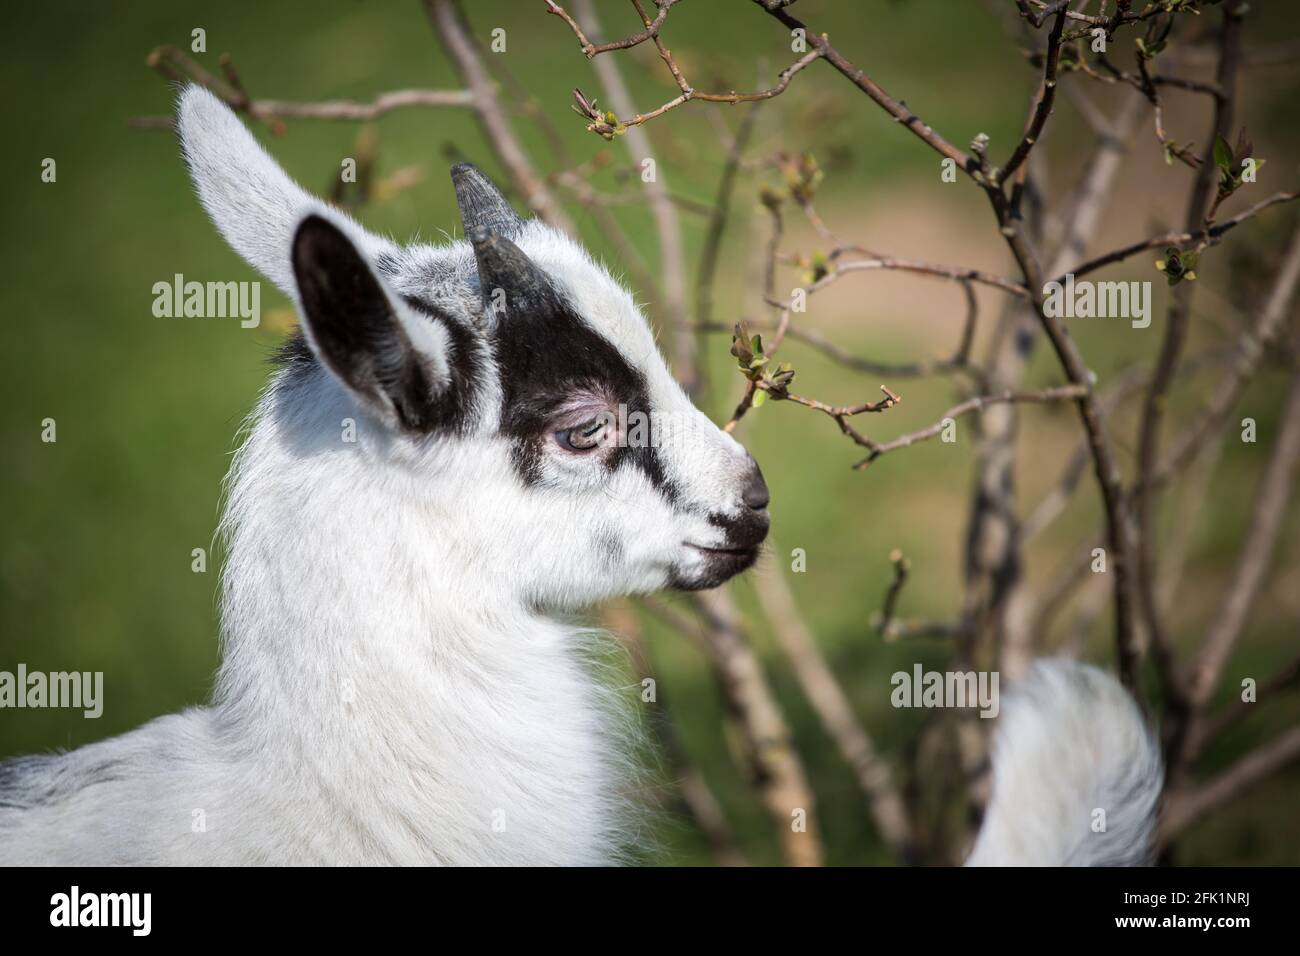 Chèvre gamin de la race 'Pfauenziege' (chèvre de paon), espèce de chèvre autrichienne menacée Banque D'Images